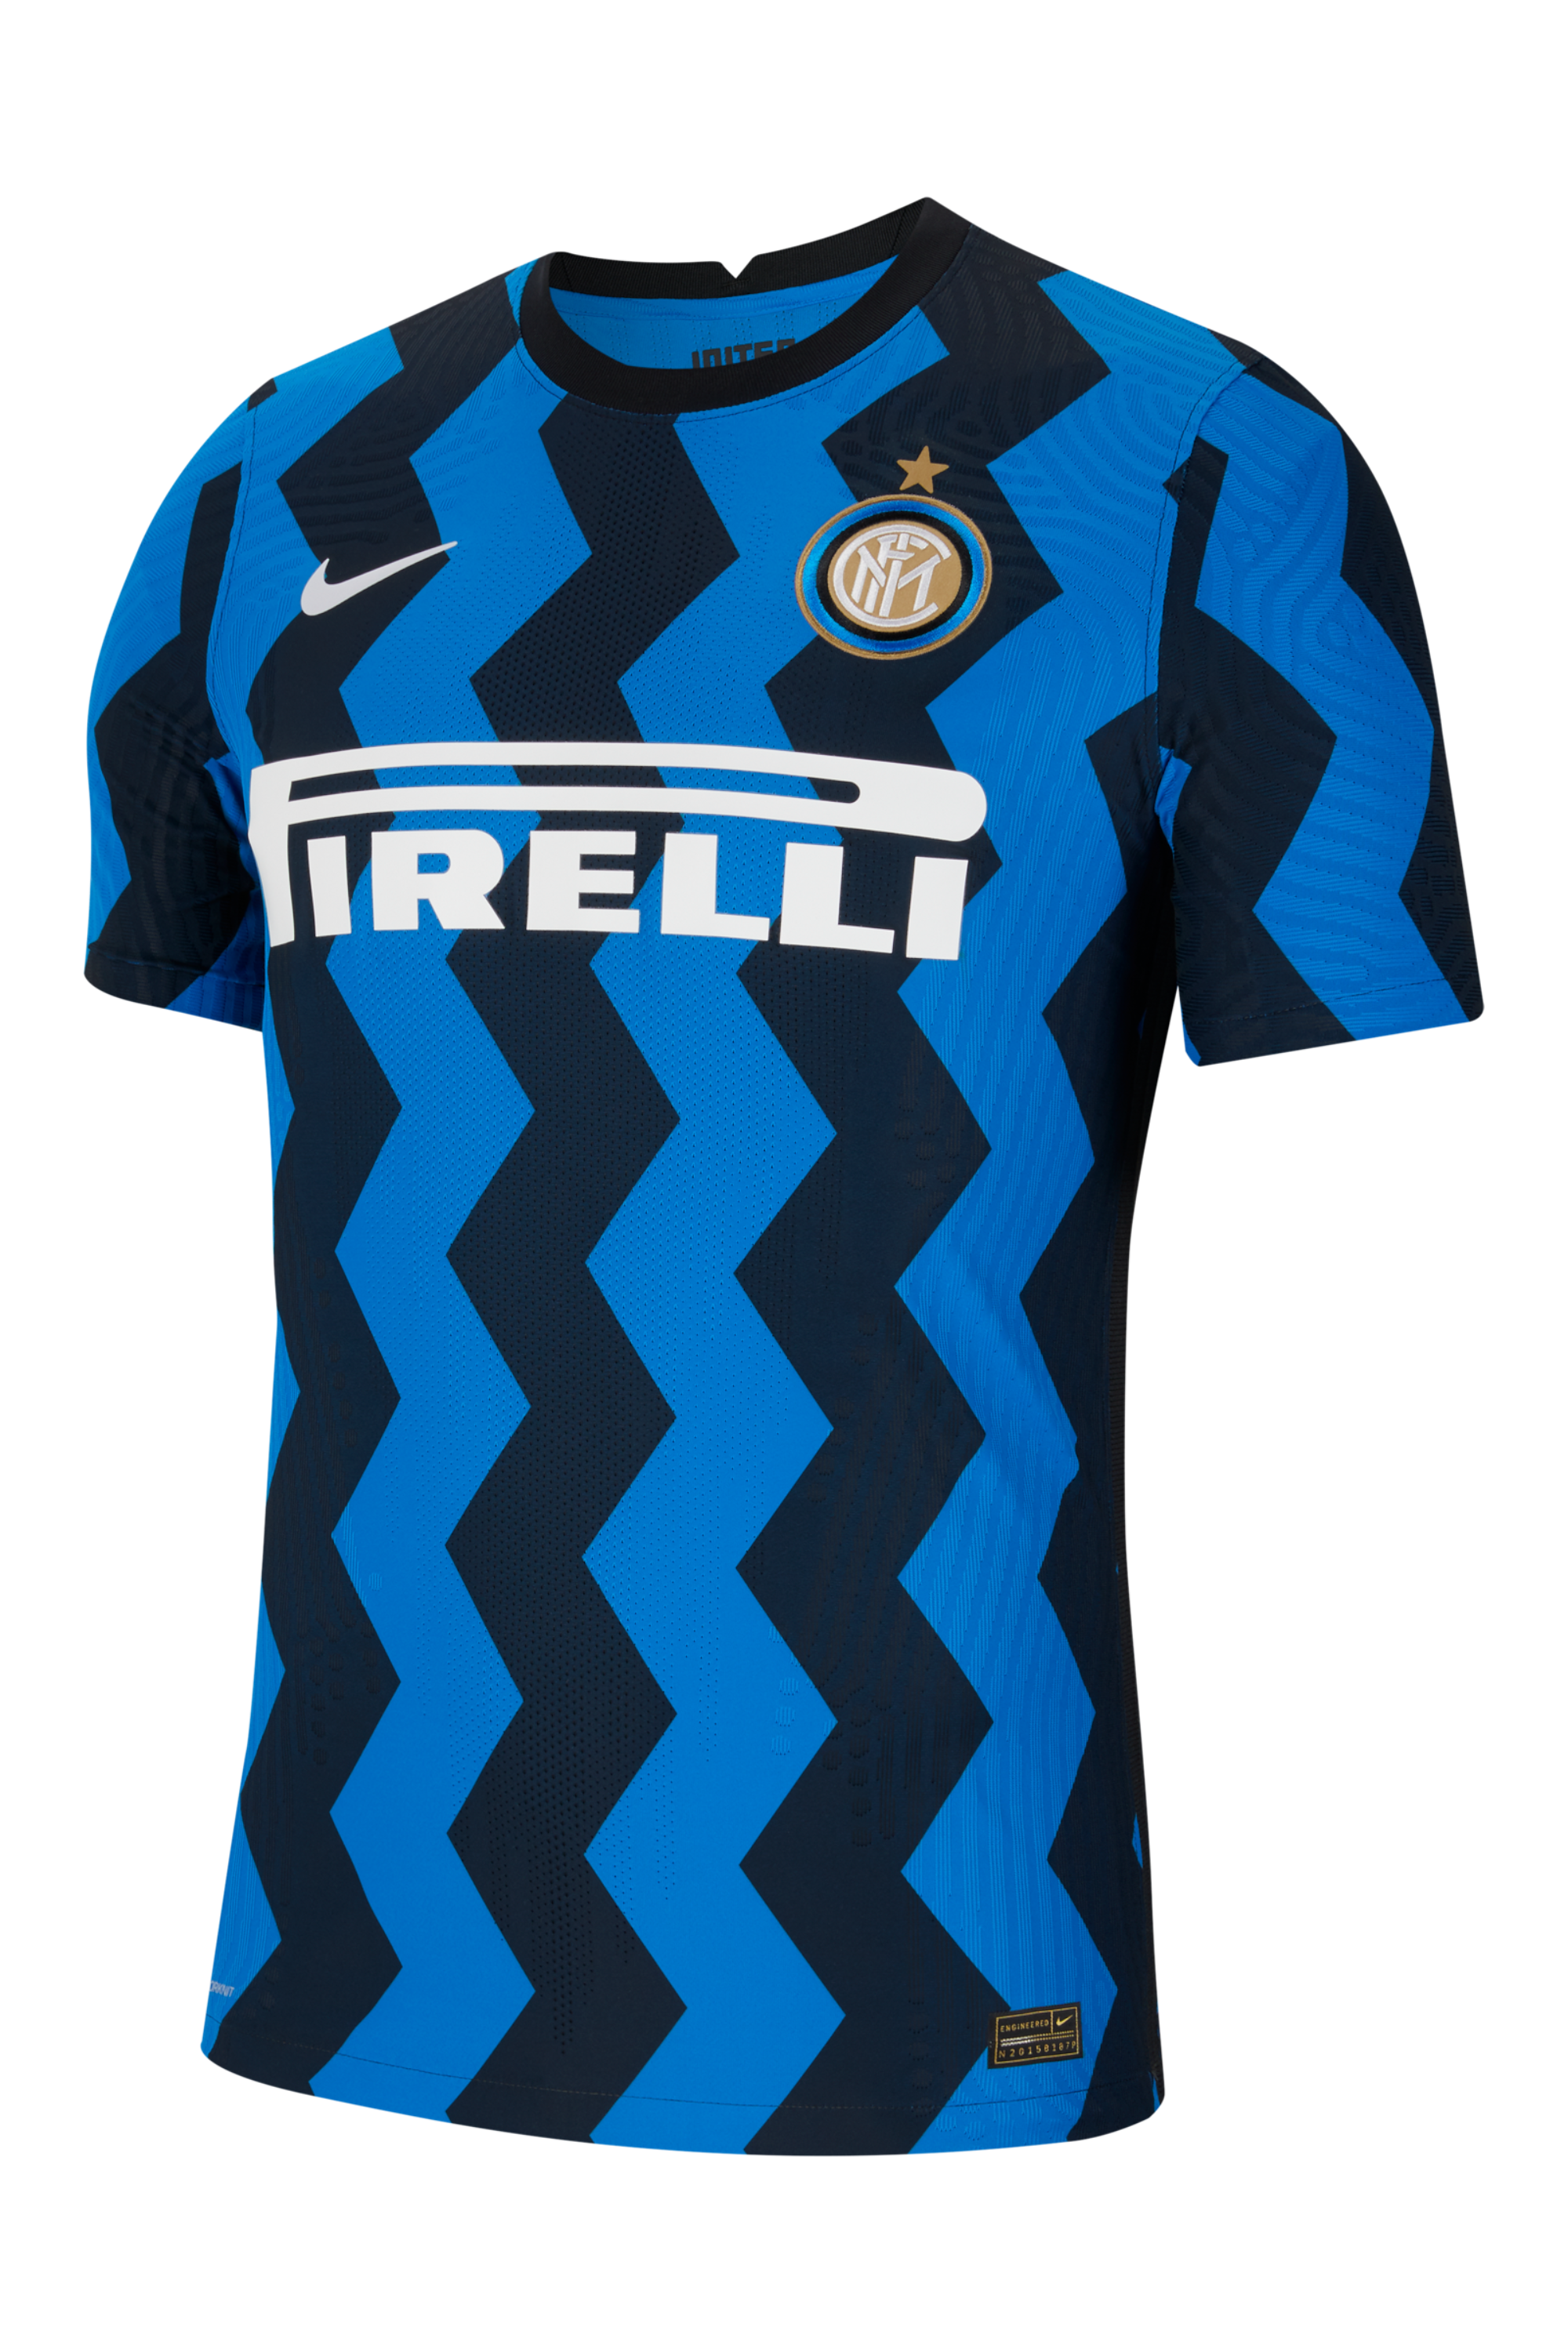 Inter t. Inter Milan 2022 Home Kit. Nike Inter Milan футболка.